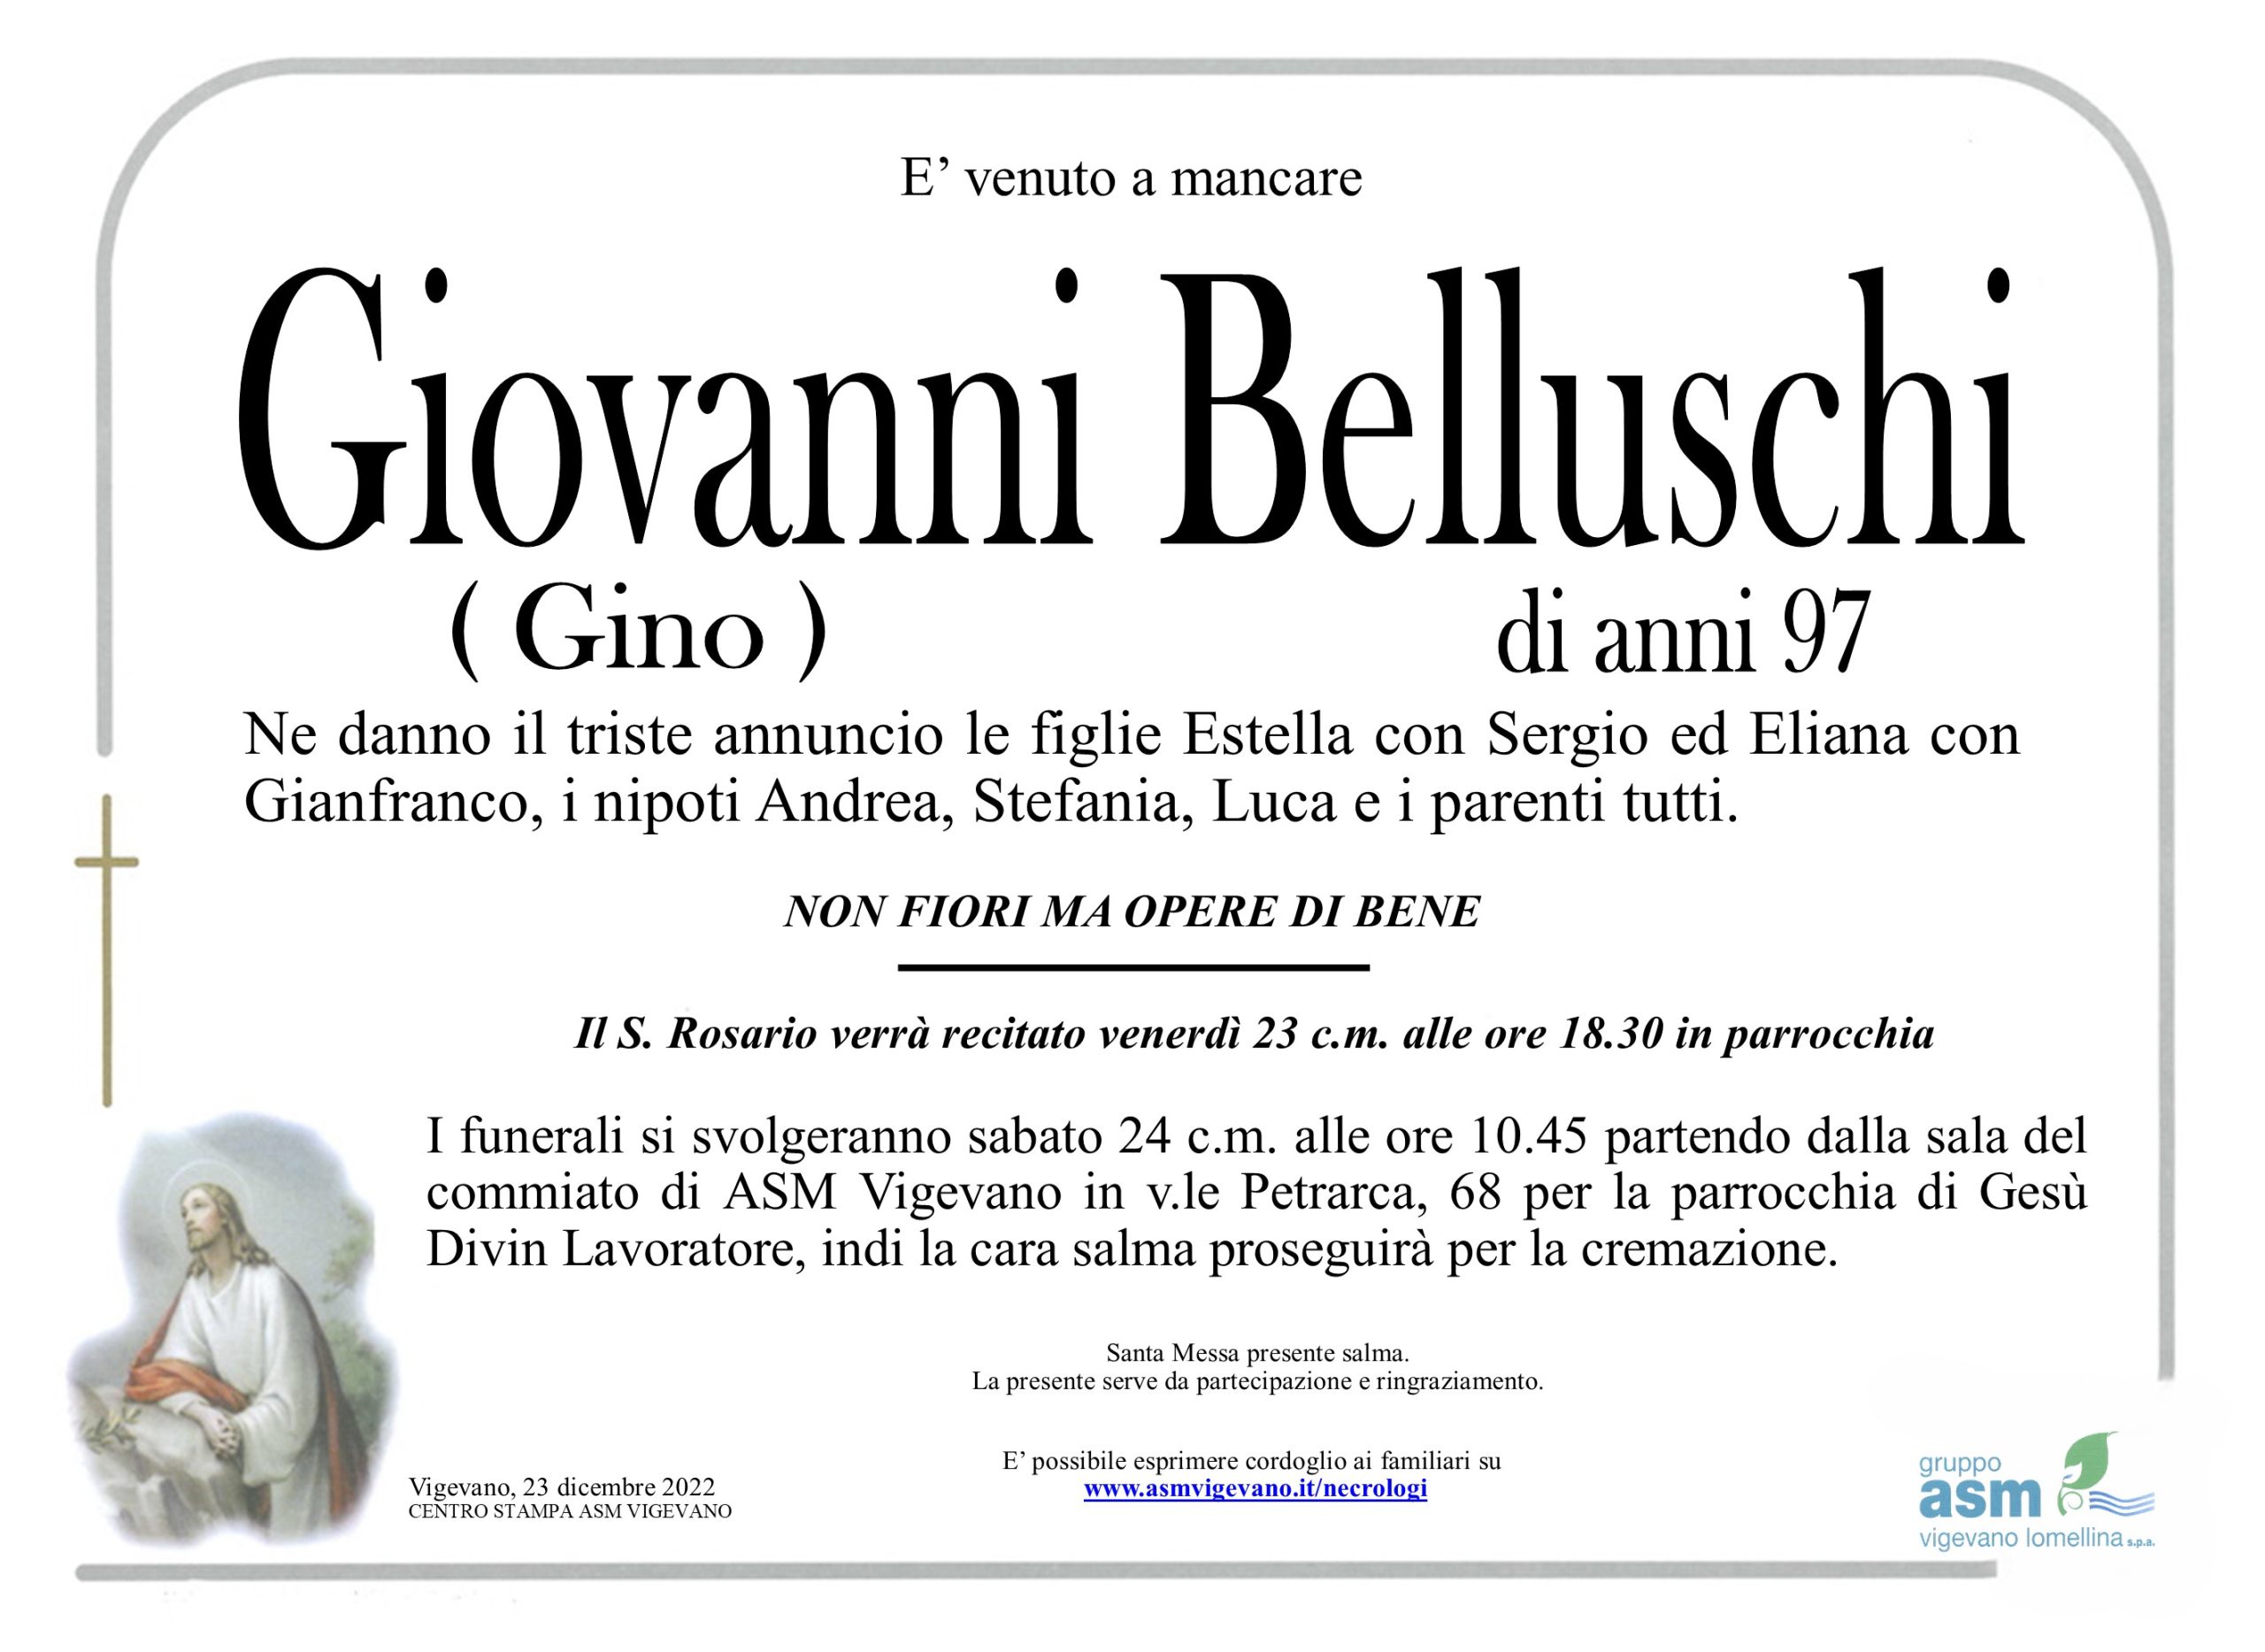 Giovanni Belluschi